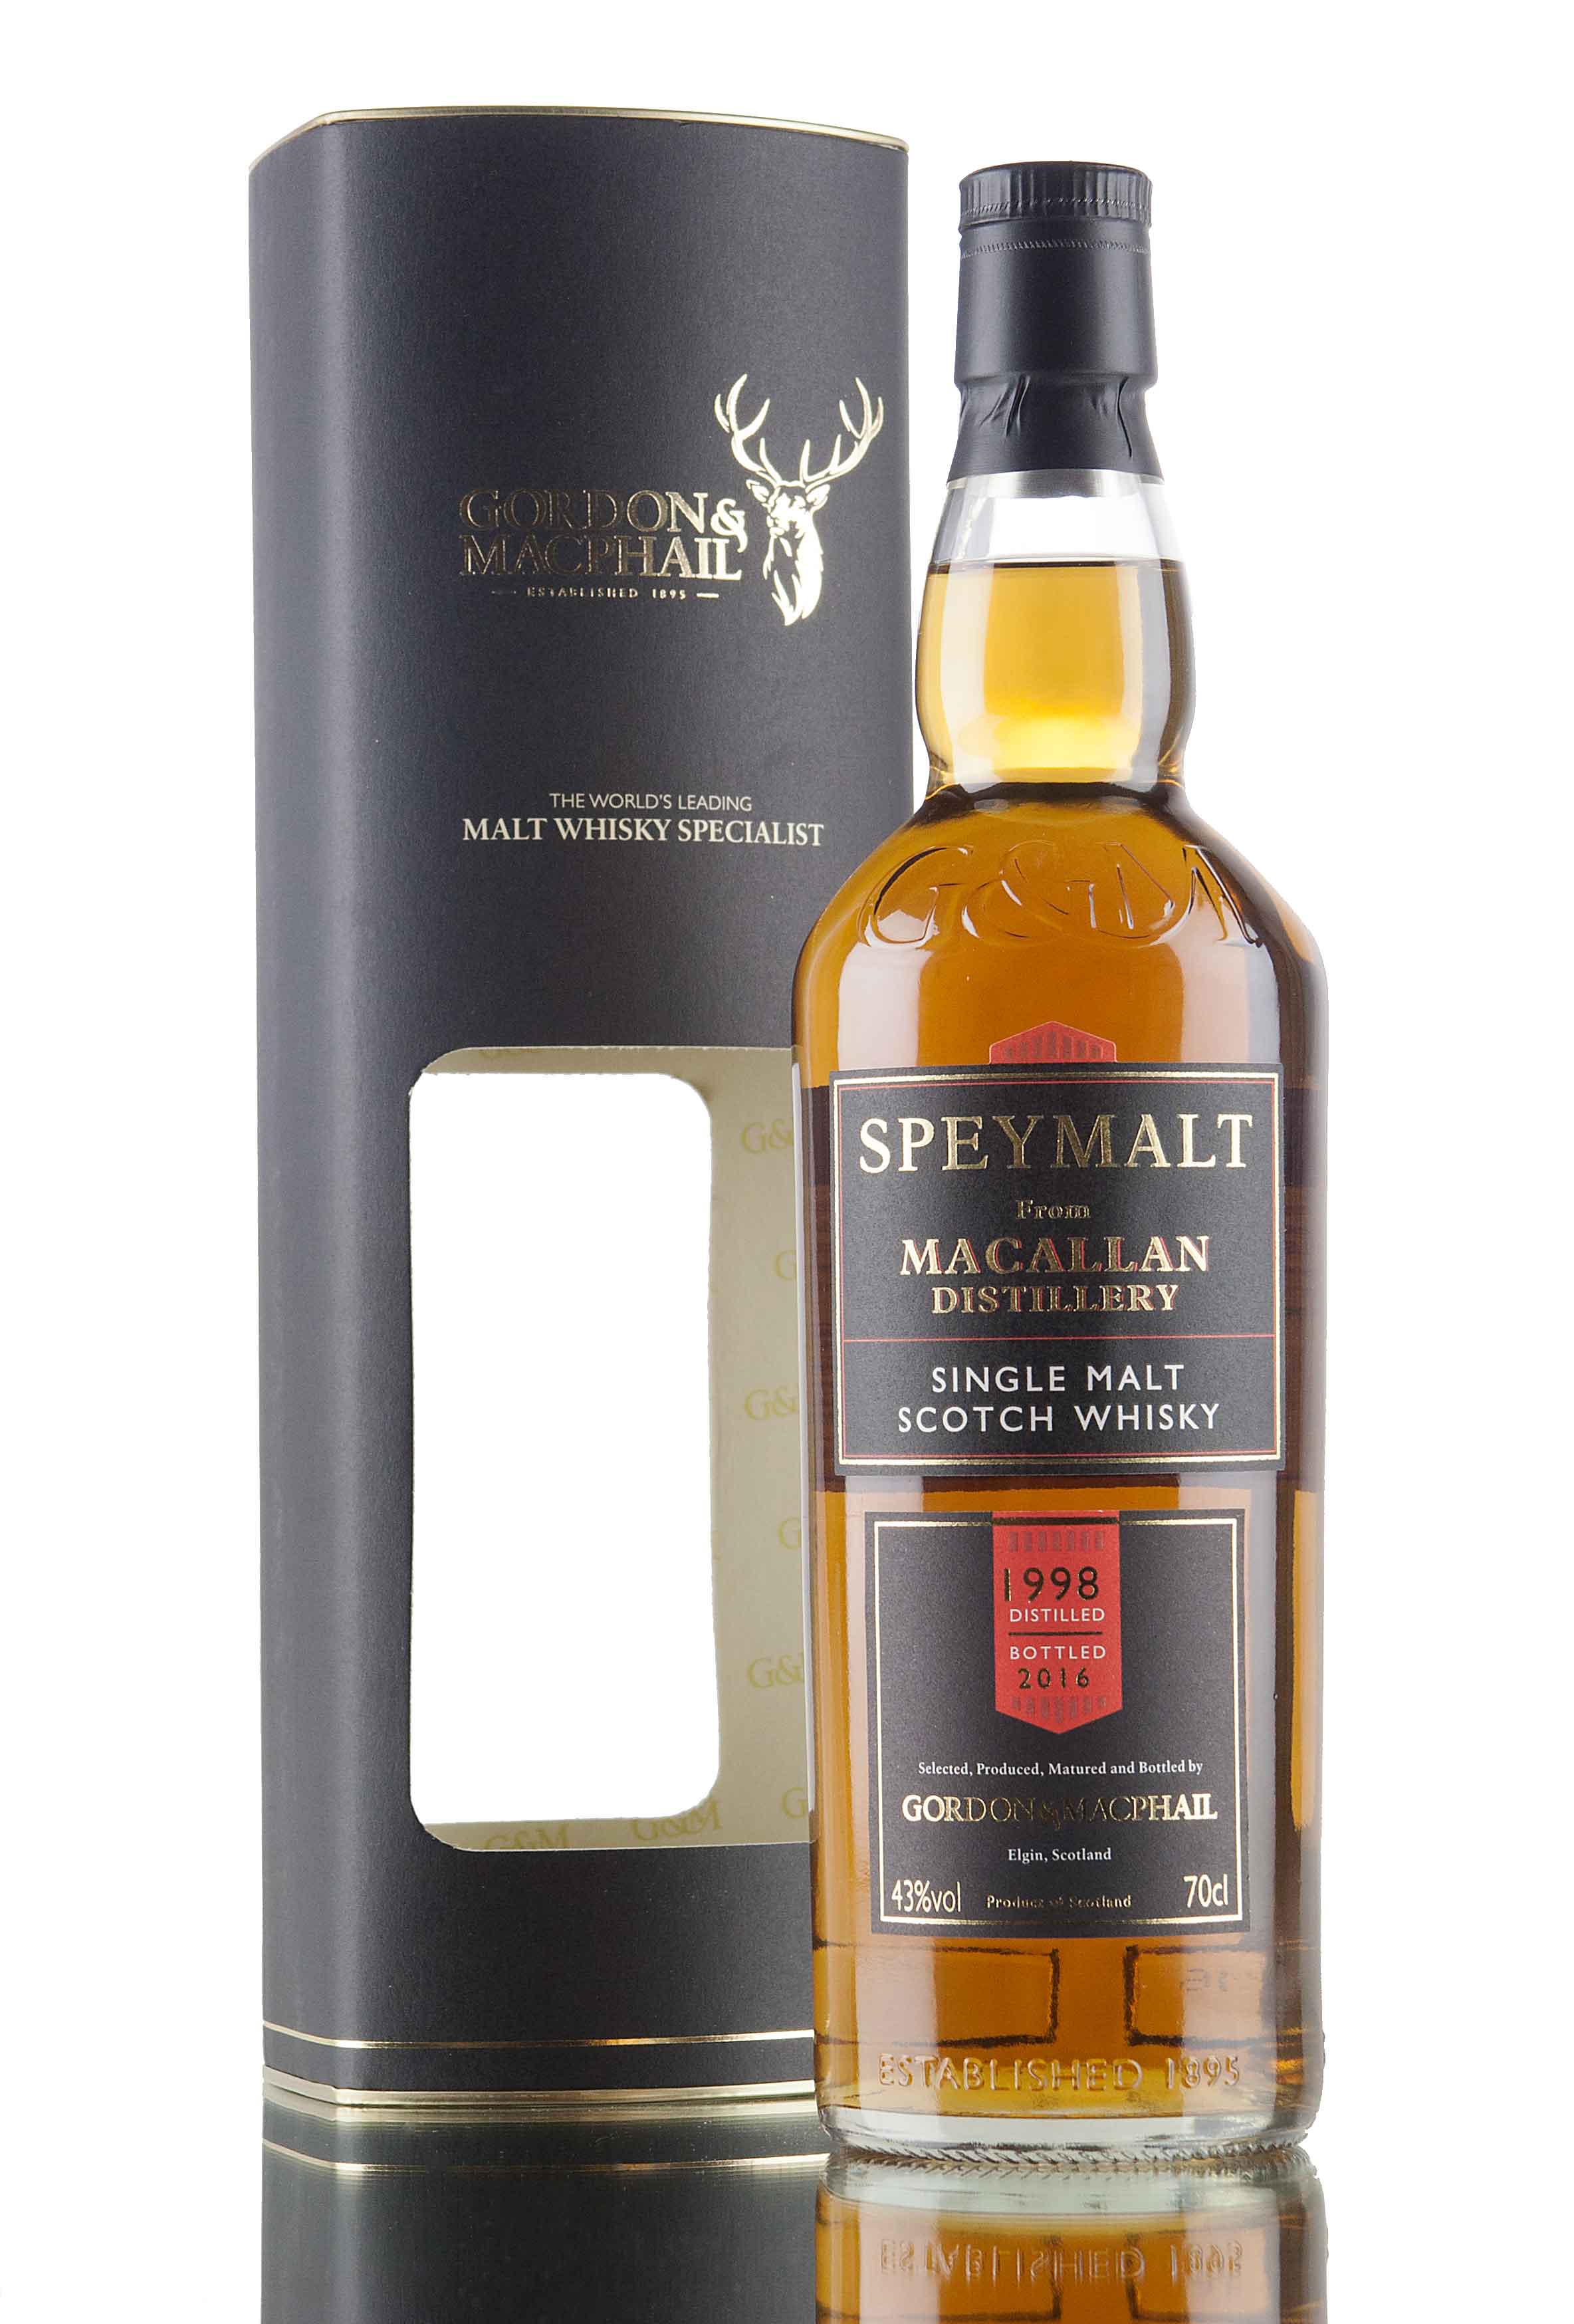 Macallan 1998 Speymalt - Bottled 2016 / Gordon & MacPhail